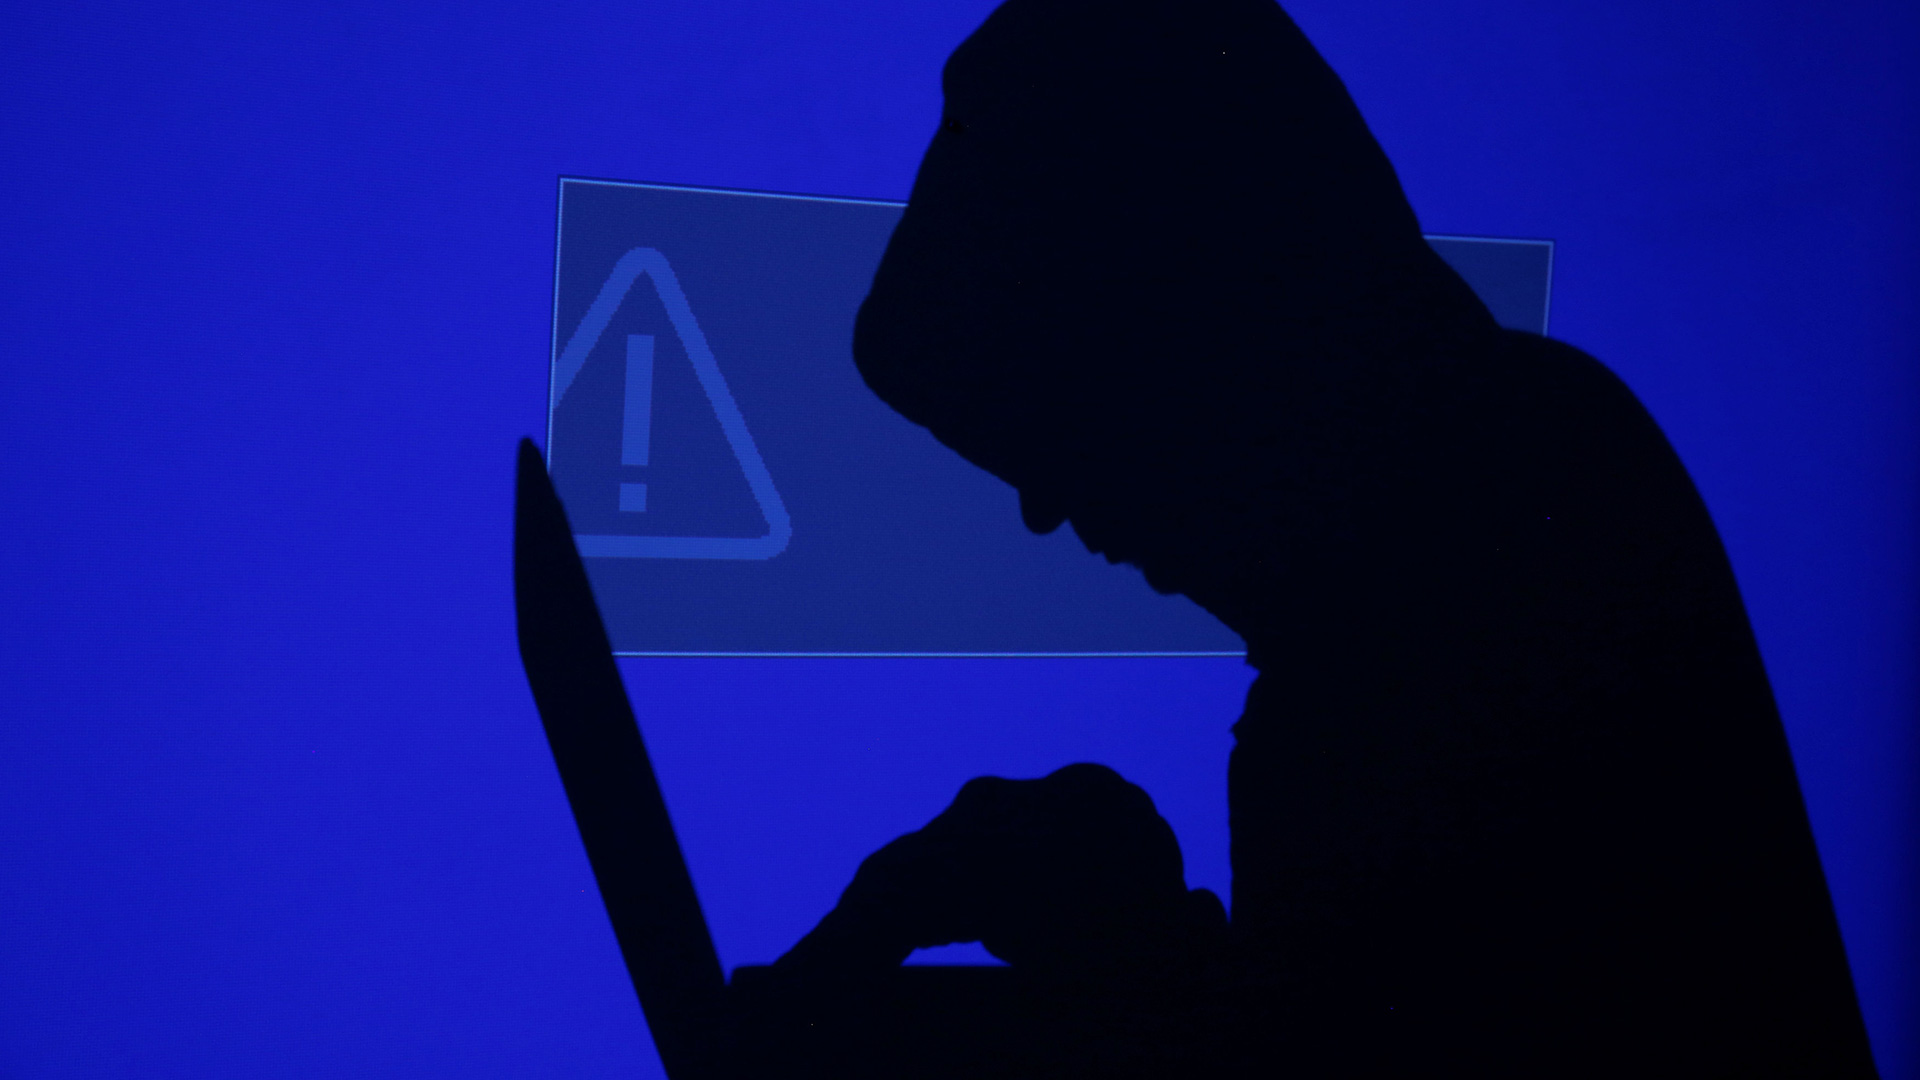 La ciberamenaza: el peligroso auge del secuestro digital